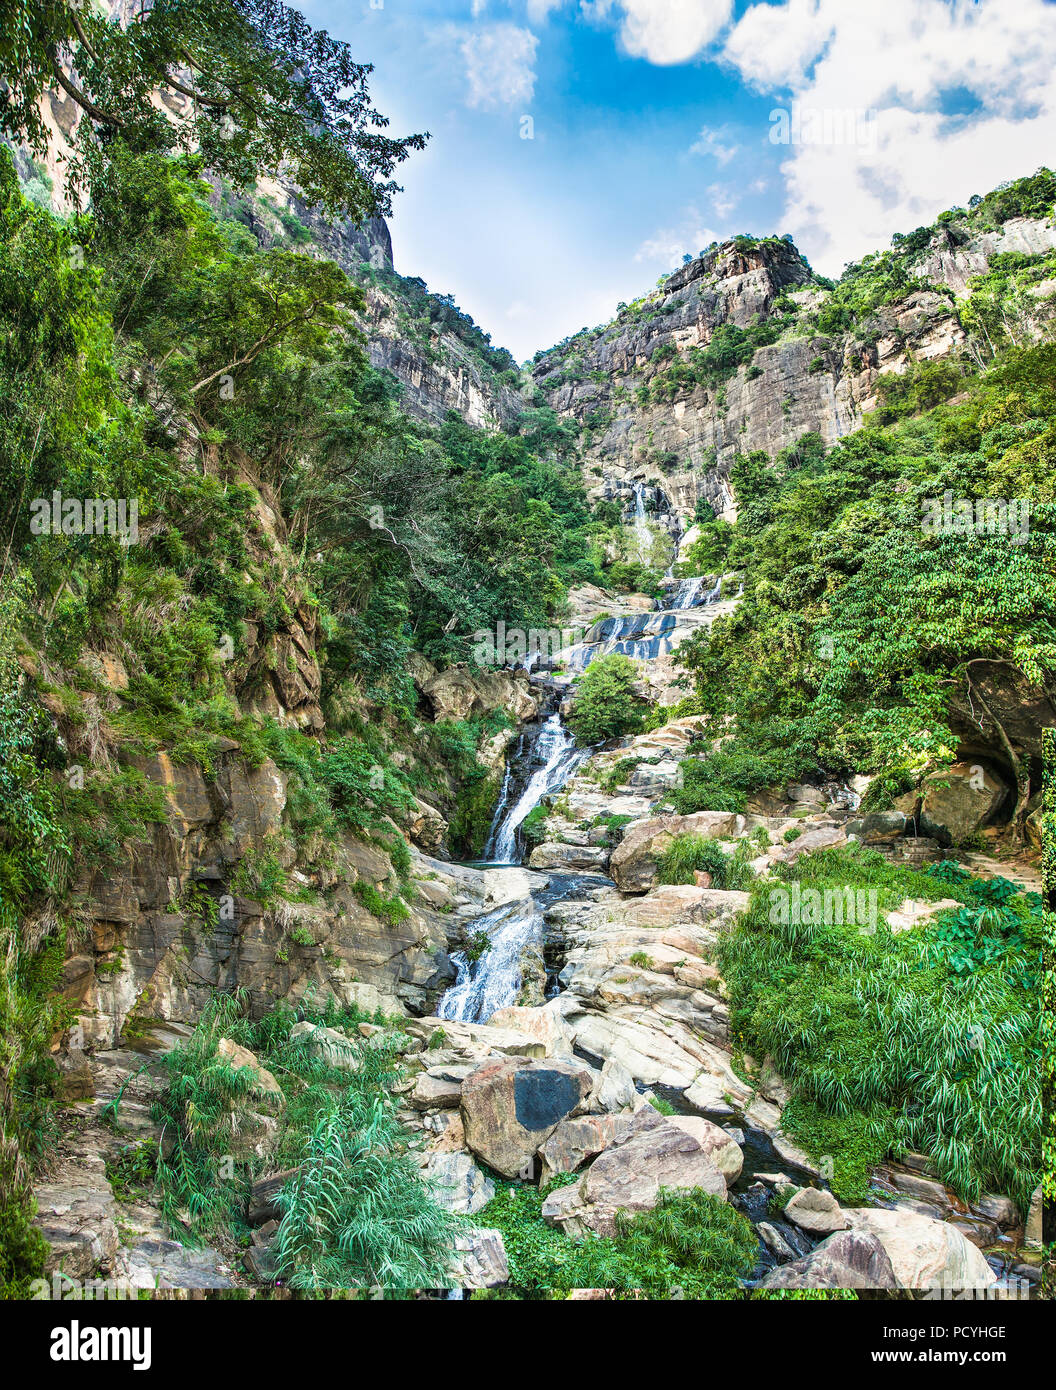 Ravana Falls or Ravana Ella waterfalls is a popular sightseeing attraction near Ella Sri Lanka. Ravana Falls ranks as one of the widest falls in Sri L Stock Photo